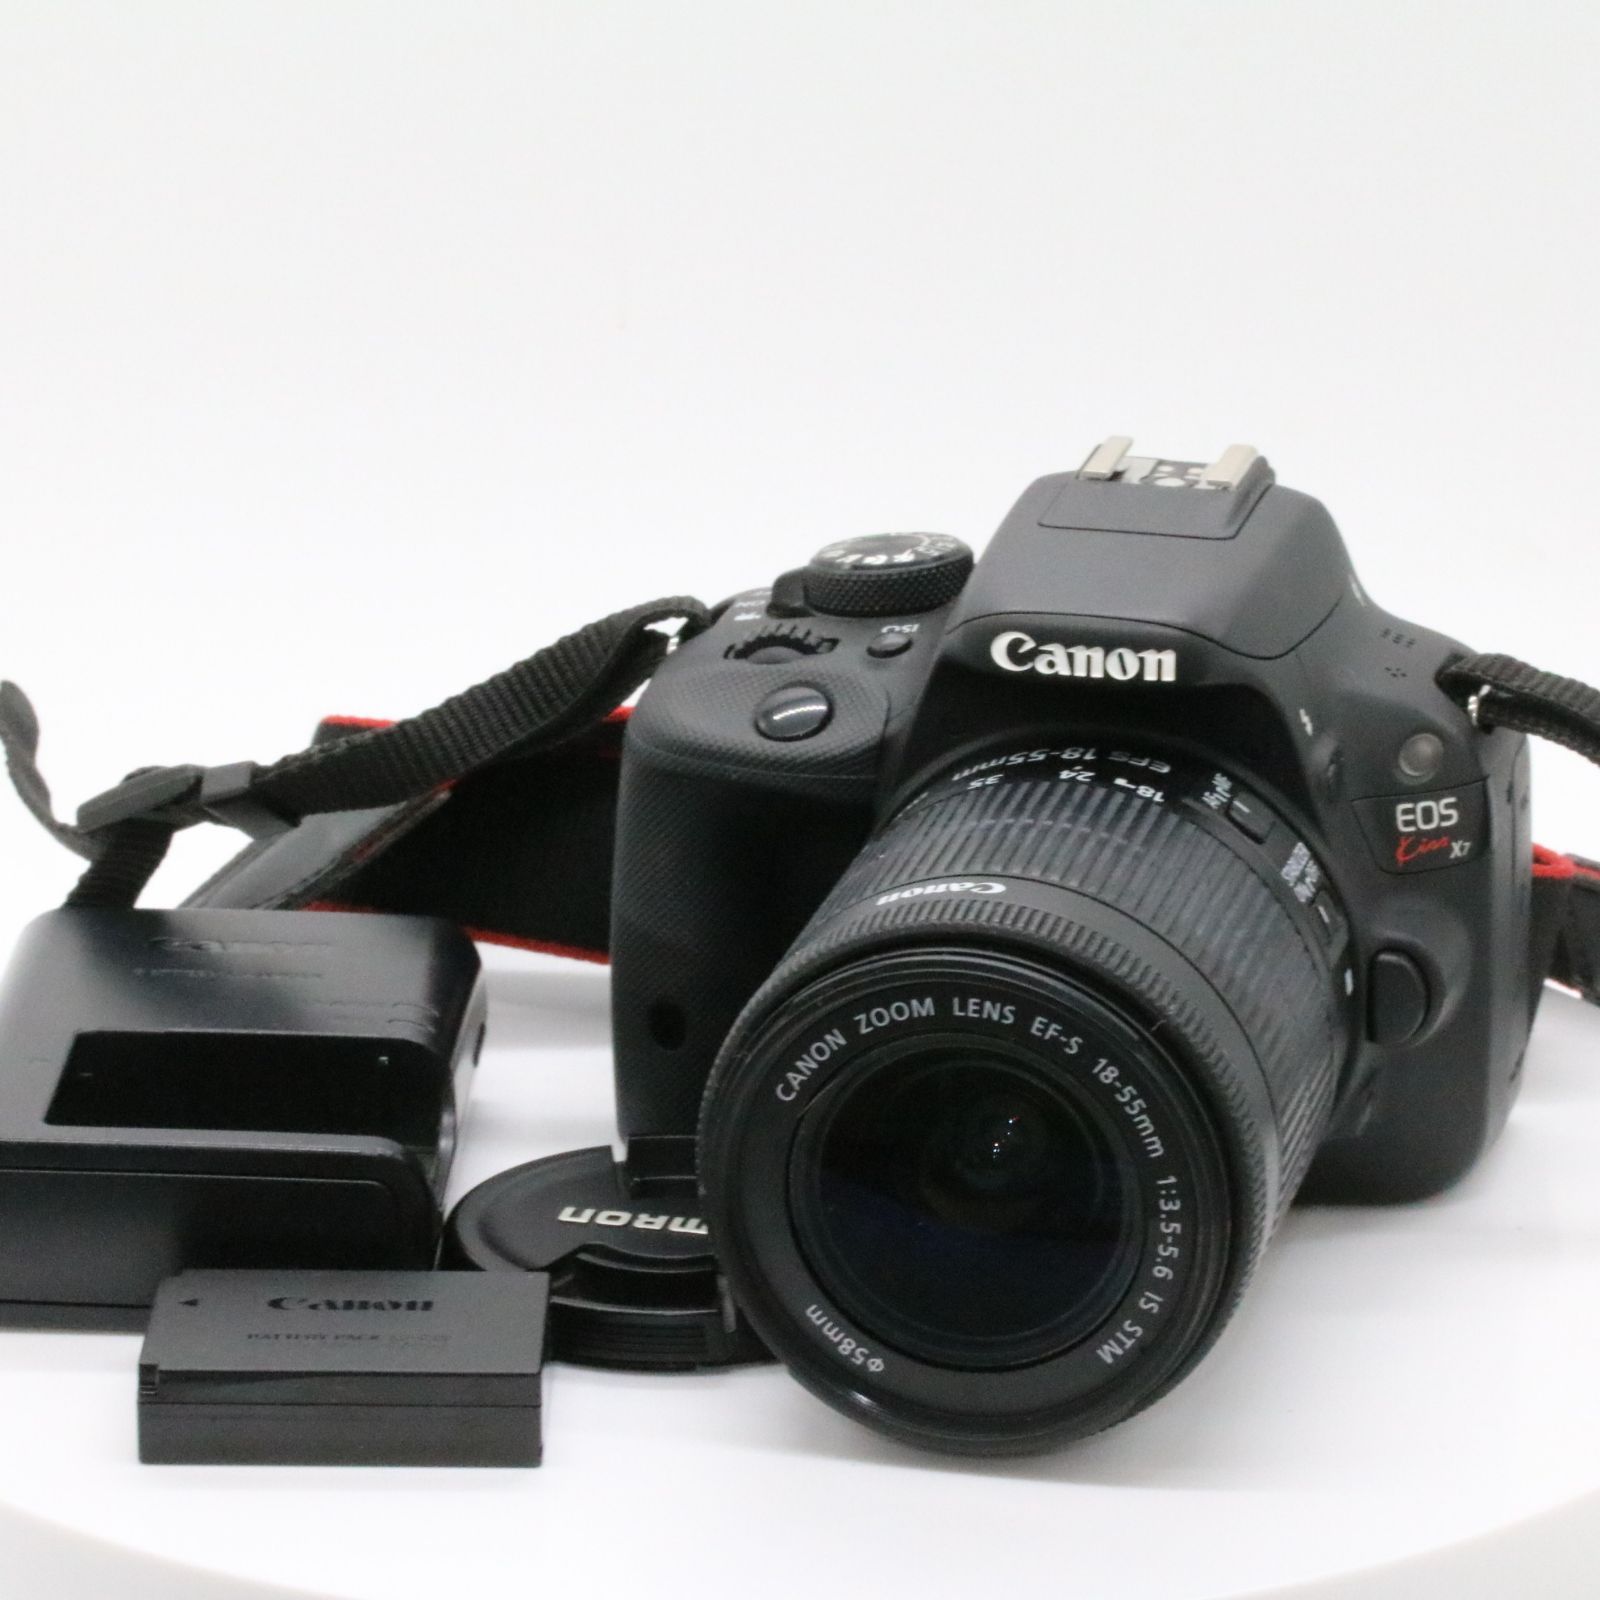 並品 Canon デジタル一眼レフカメラ EOS Kiss X7 レンズキット EF-S18-55mm F3.5-5.6 IS STM付属  KISSX7-1855ISSTMLK